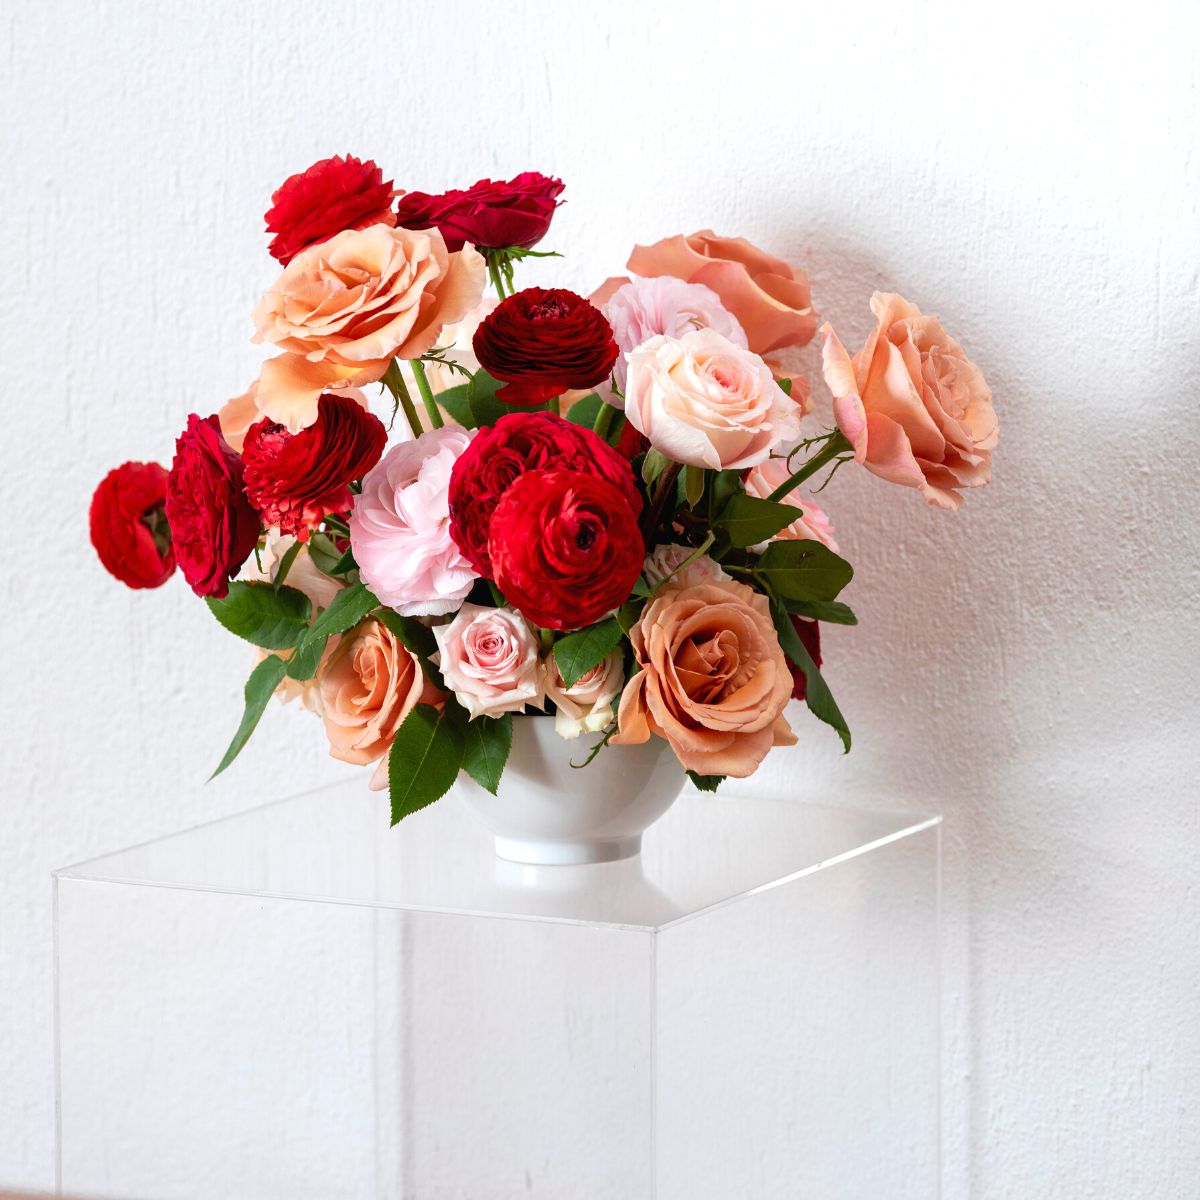 Colorful flower arrangement using Rosaprima flowers